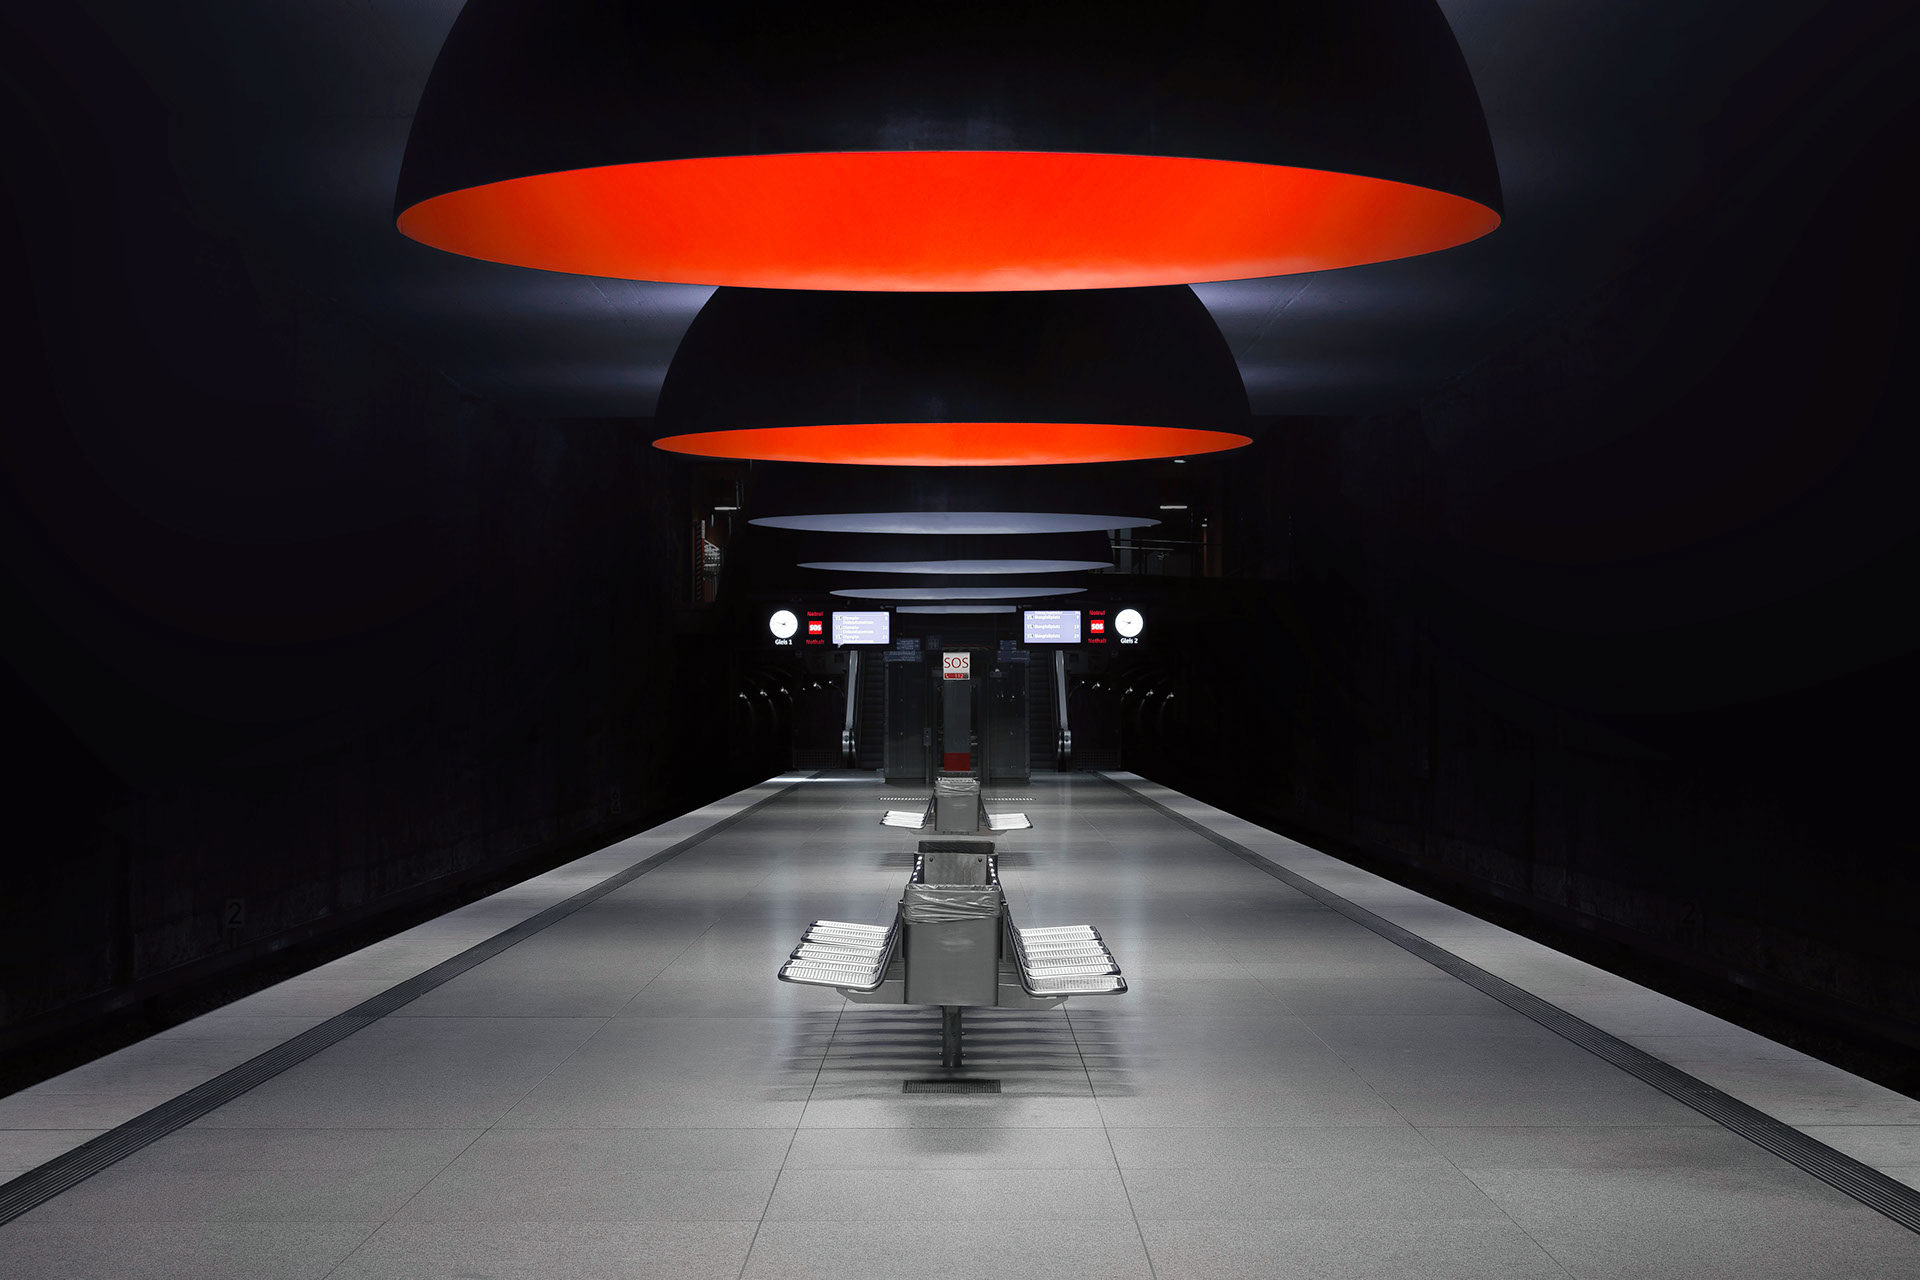 Underground system. Kevin Krautgartner минималисты. Go Underground.